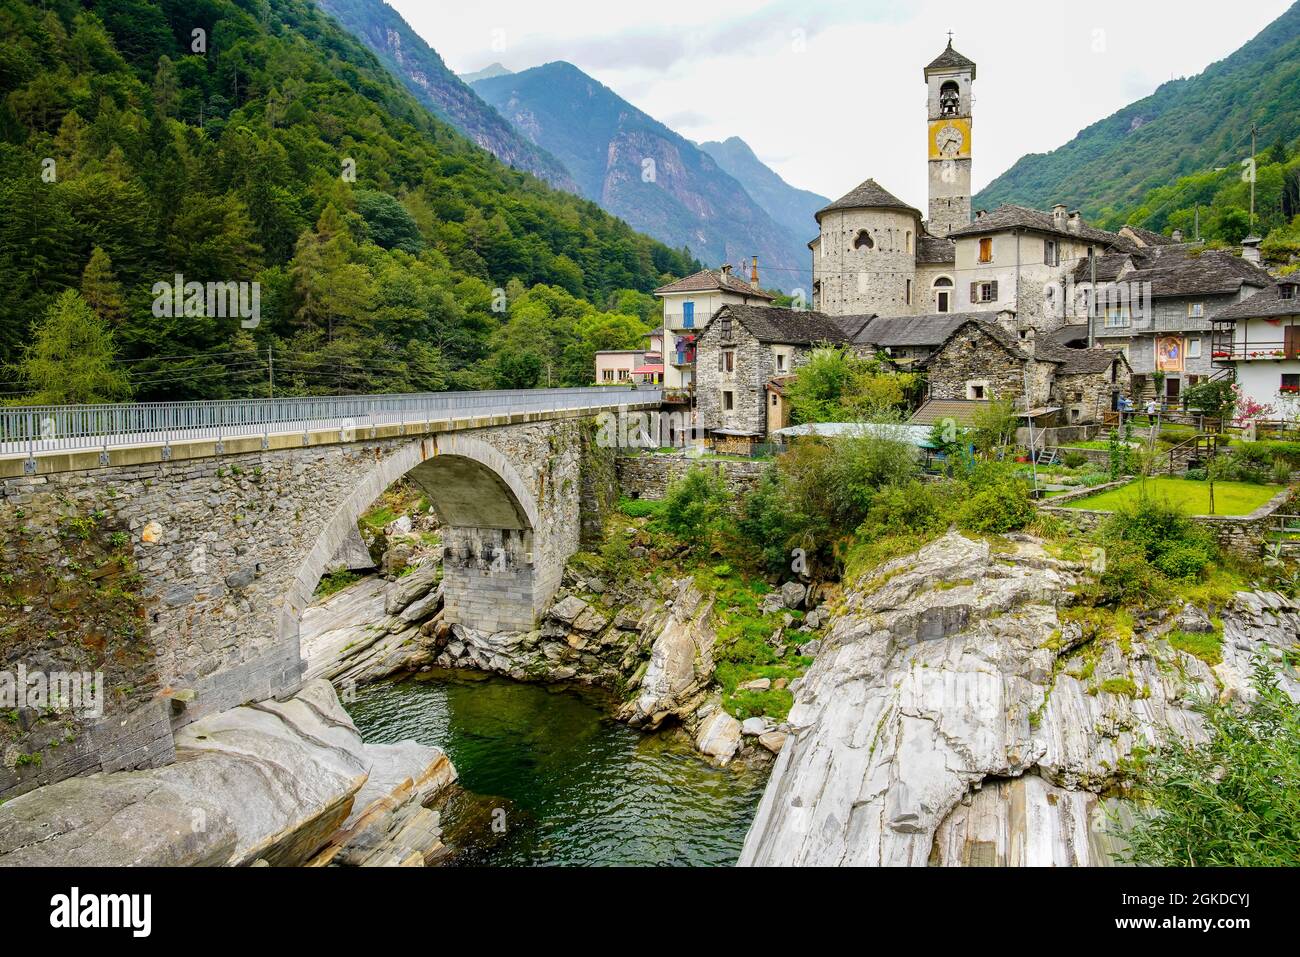 Charmante vieille ville de Lastezzo dans la vallée alpine de la Verzasca, canton du Tessin, Suisse. Banque D'Images